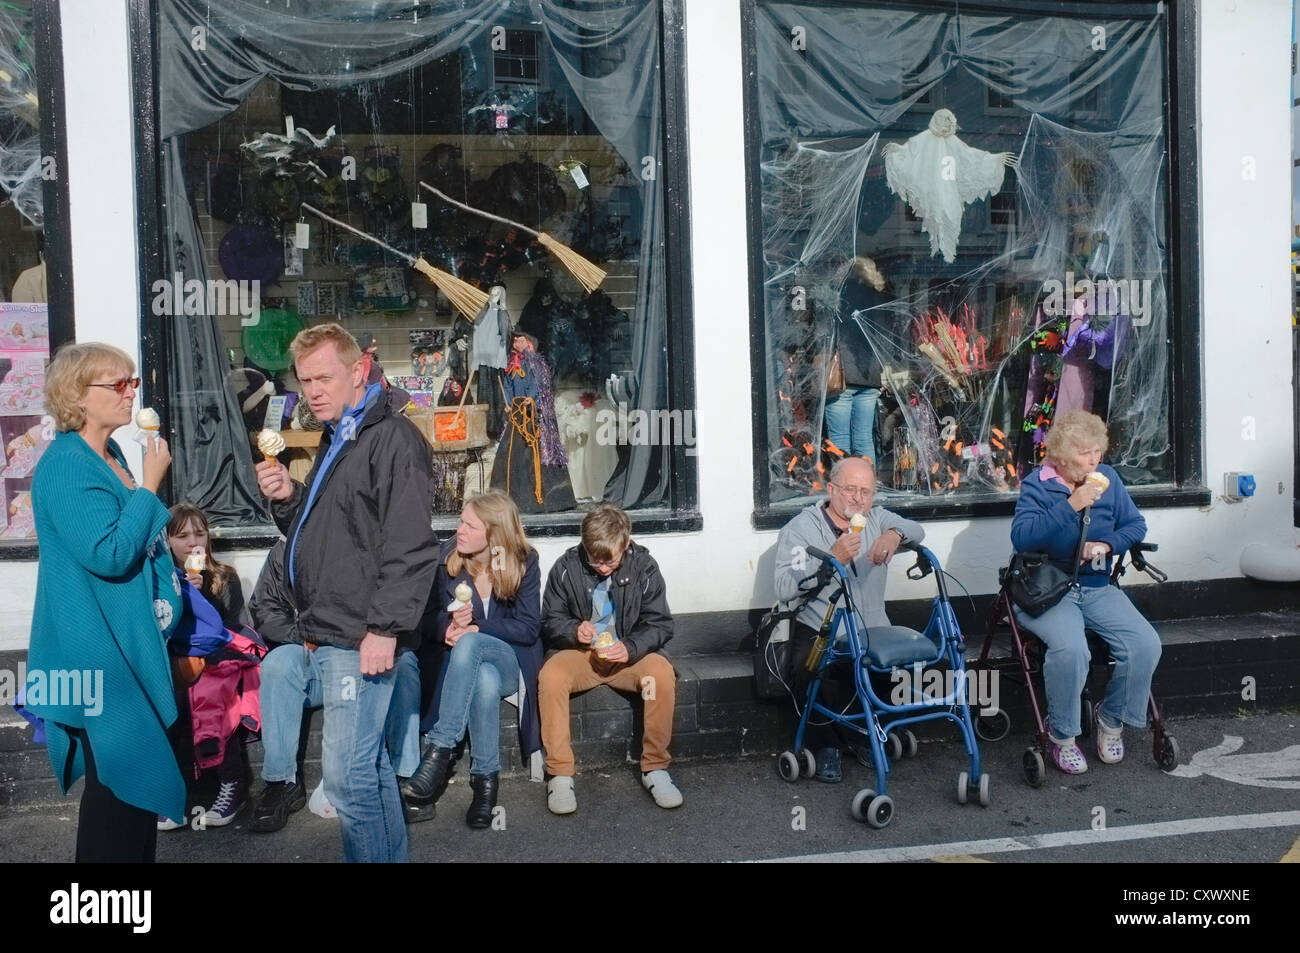 Les gens de manger des glaces dans la région de Falmouth, Cornwall, UK au cours de temps exceptionnellement doux en octobre. Décorations Halloween show Banque D'Images